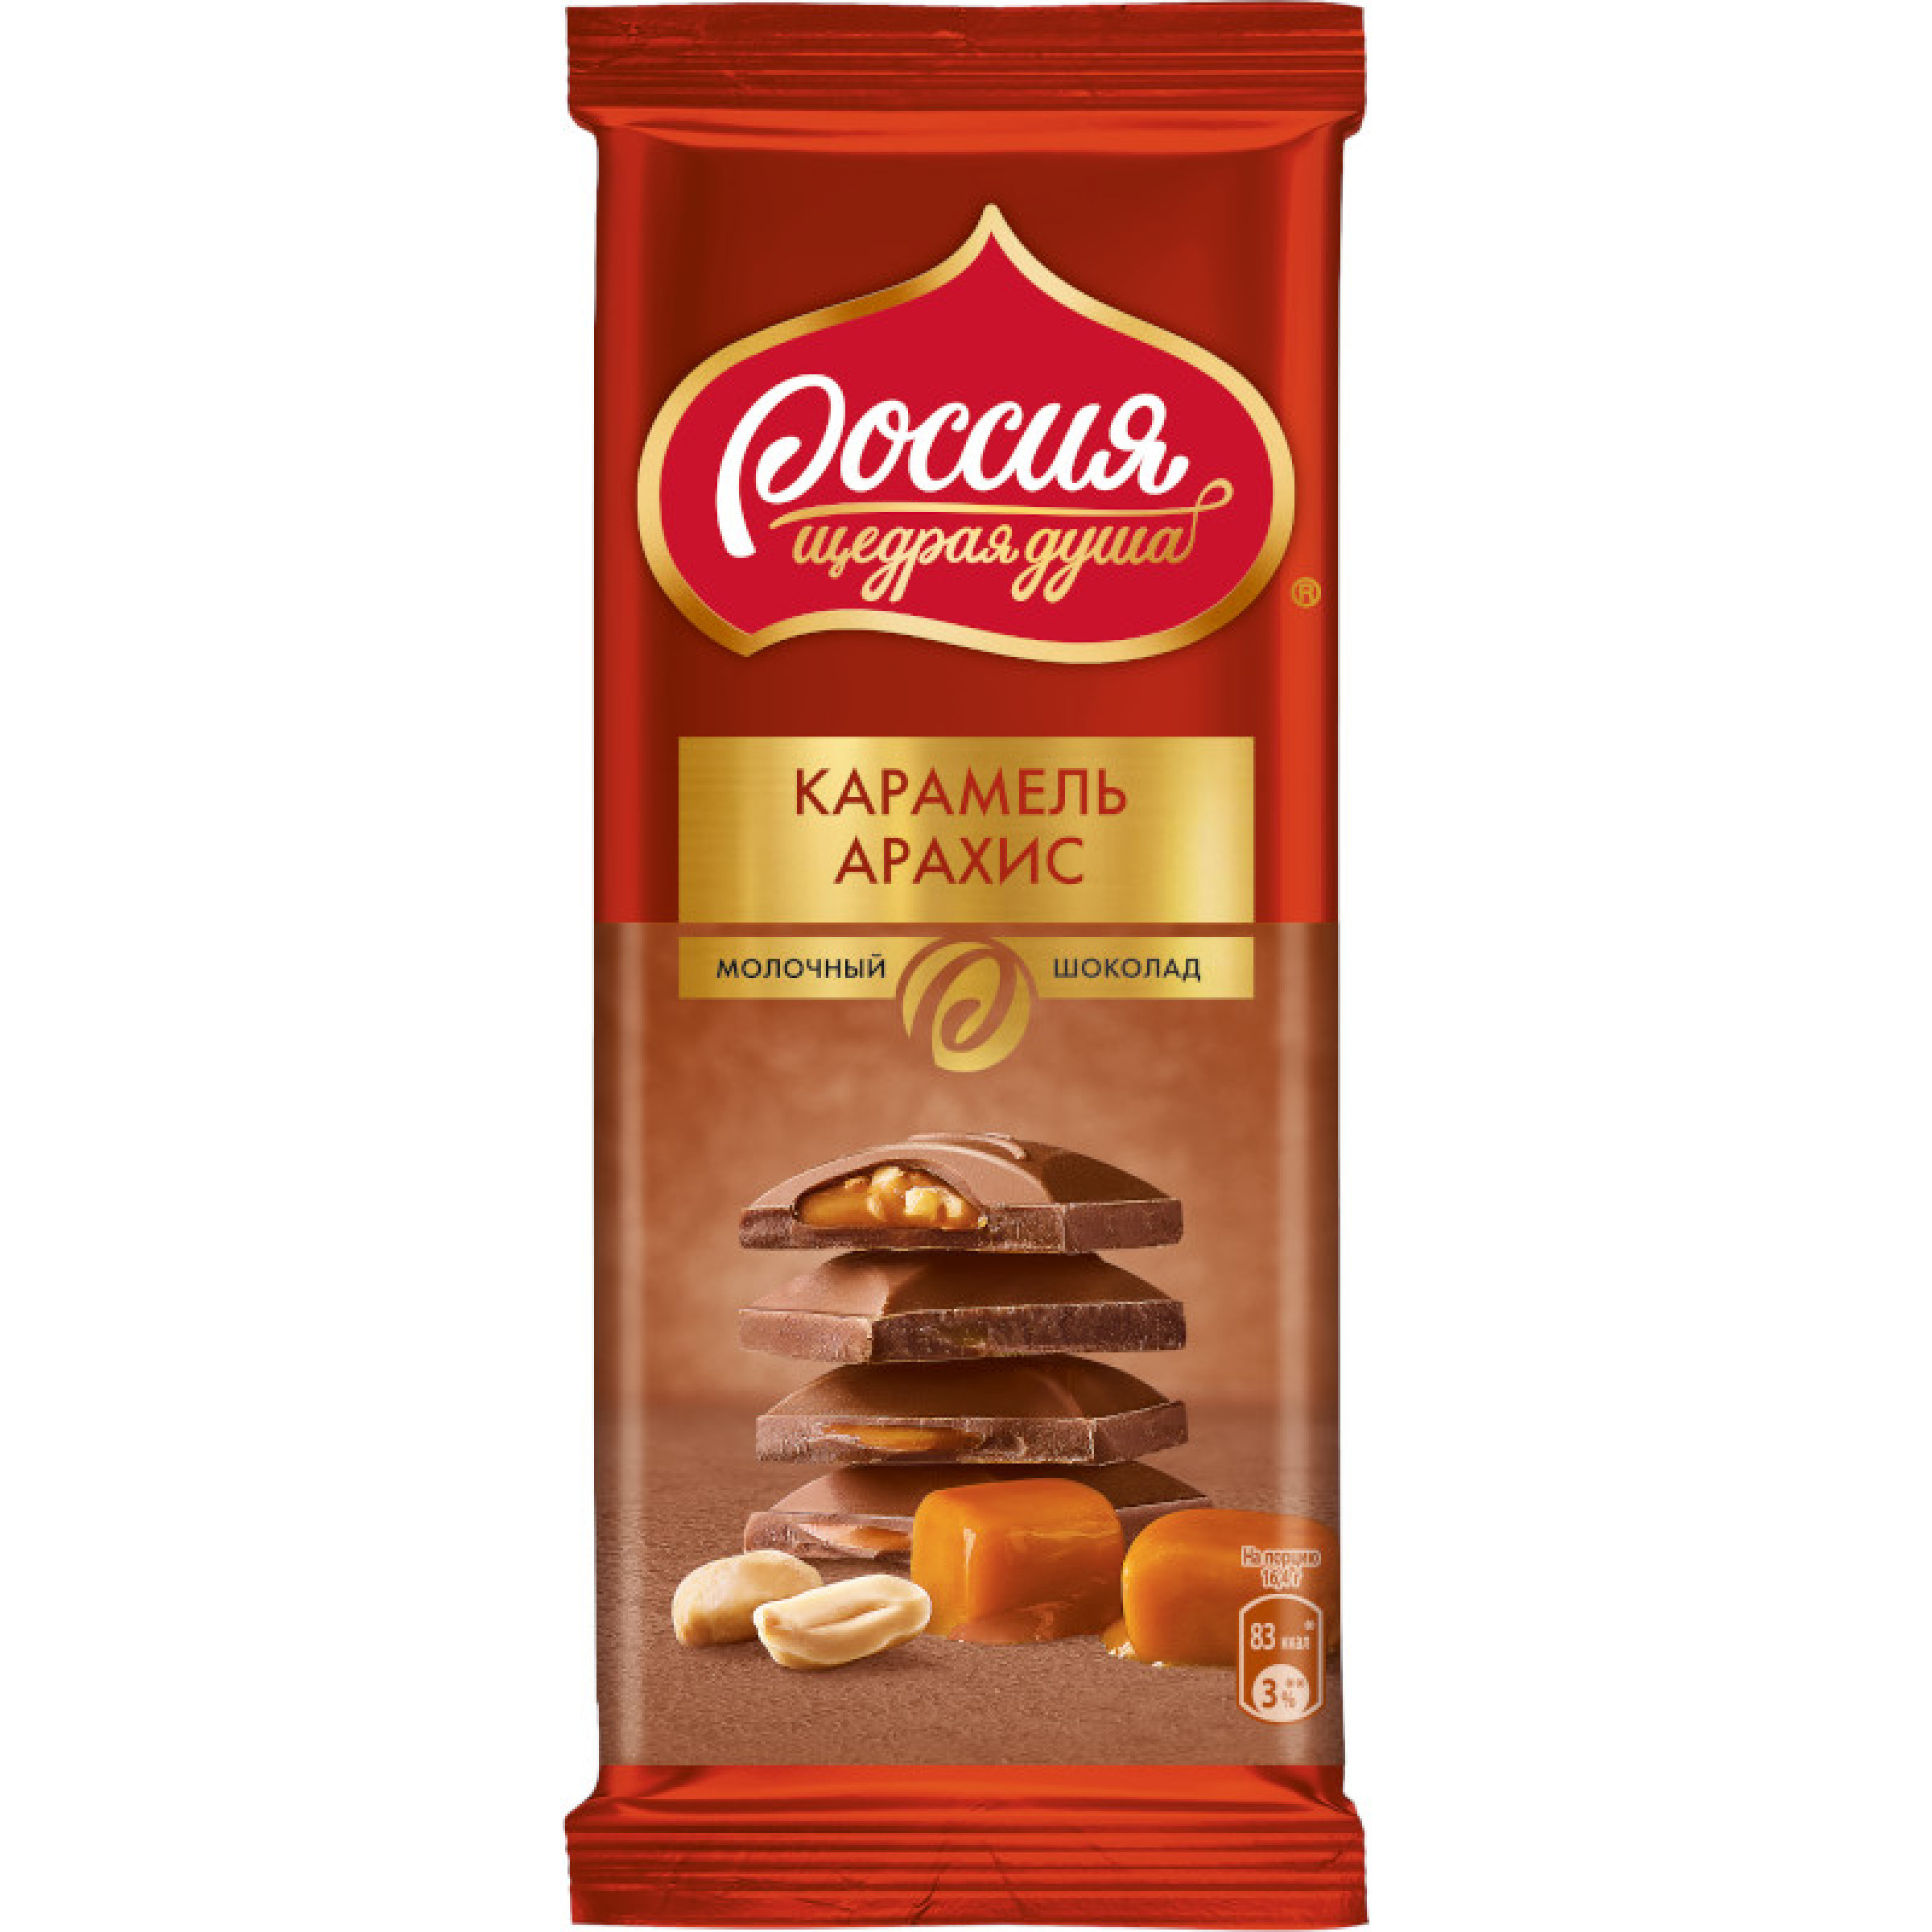 Молочный шоколад с карамелью и арахисом, Россия - щедрая душа, 82 г